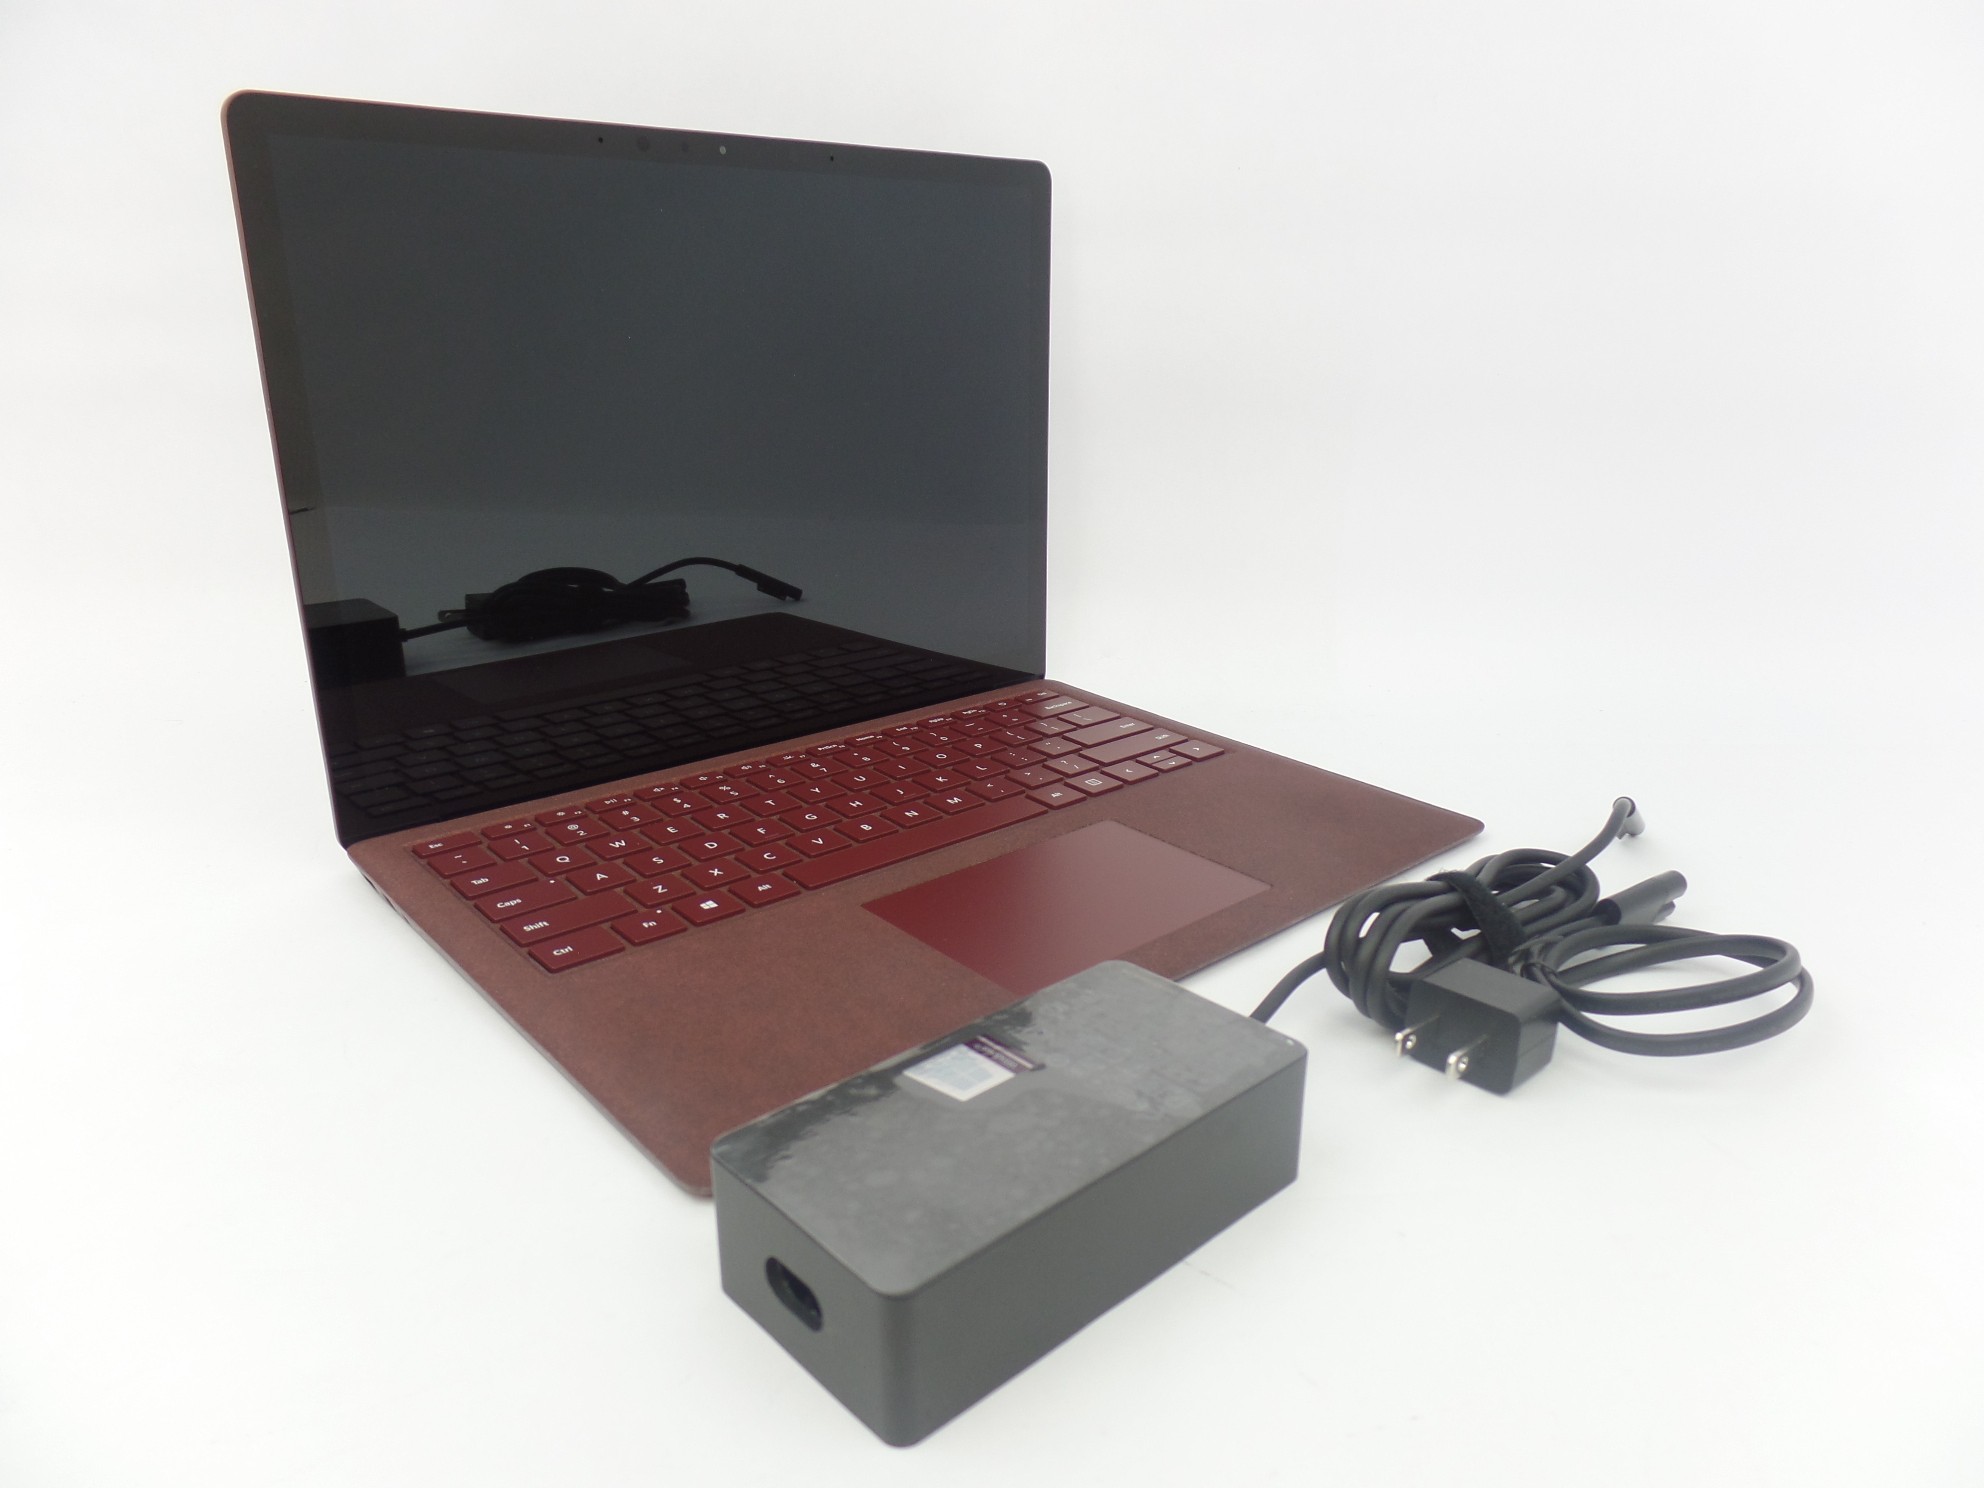 Microsoft Surface Laptop 1769 13.5" Touch i5-7200U 2.7Hz 8GB 256GB W10P Burgundy